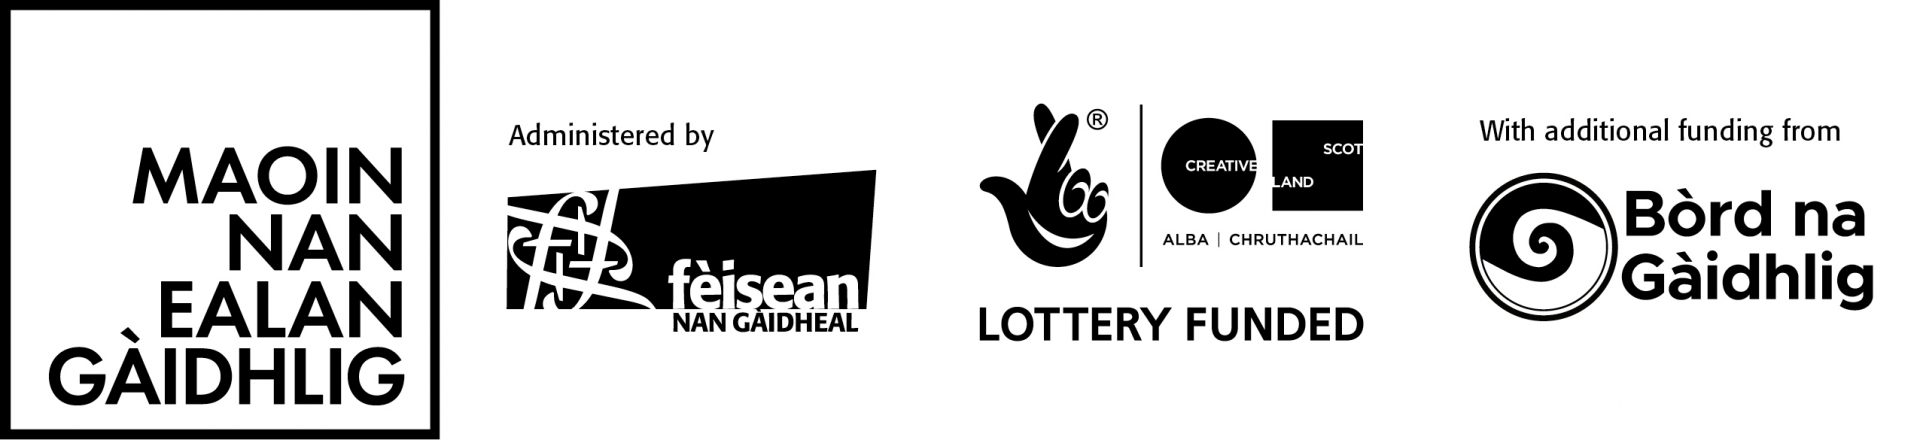 Maoin nan Ealan / Gaelic Arts Fund logo with logos of Fèisean nan Gàidheal, Creative Scotland and Bòrd na Gàidhlig